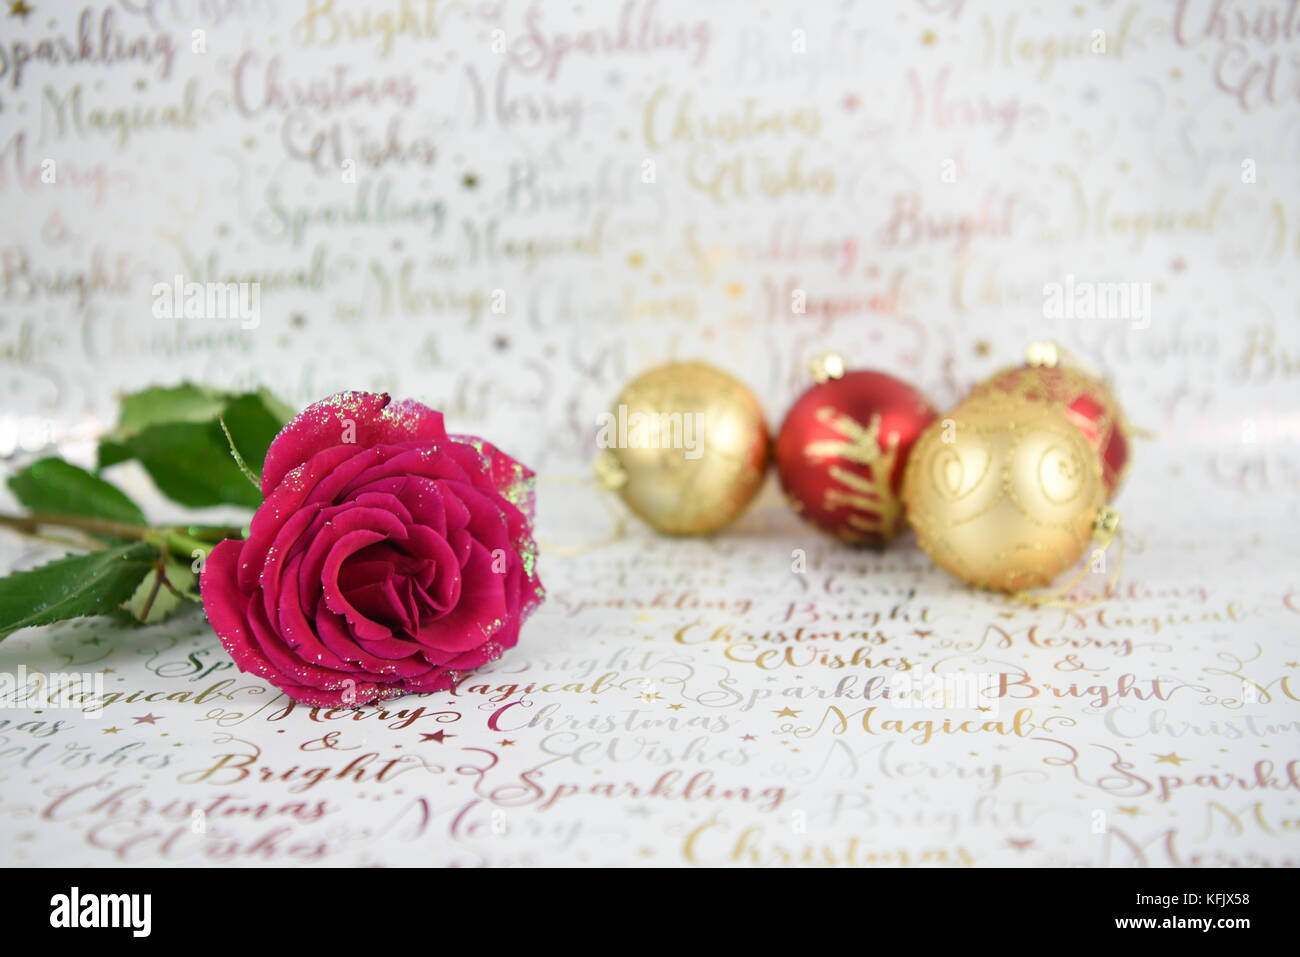 Imagen fotografía de navidad con purpurina rosa roja y flor de oro rojo brillante de adornos de navidad adornos del árbol de brillante color blanco sobre fondo de papel enrollado Foto de stock